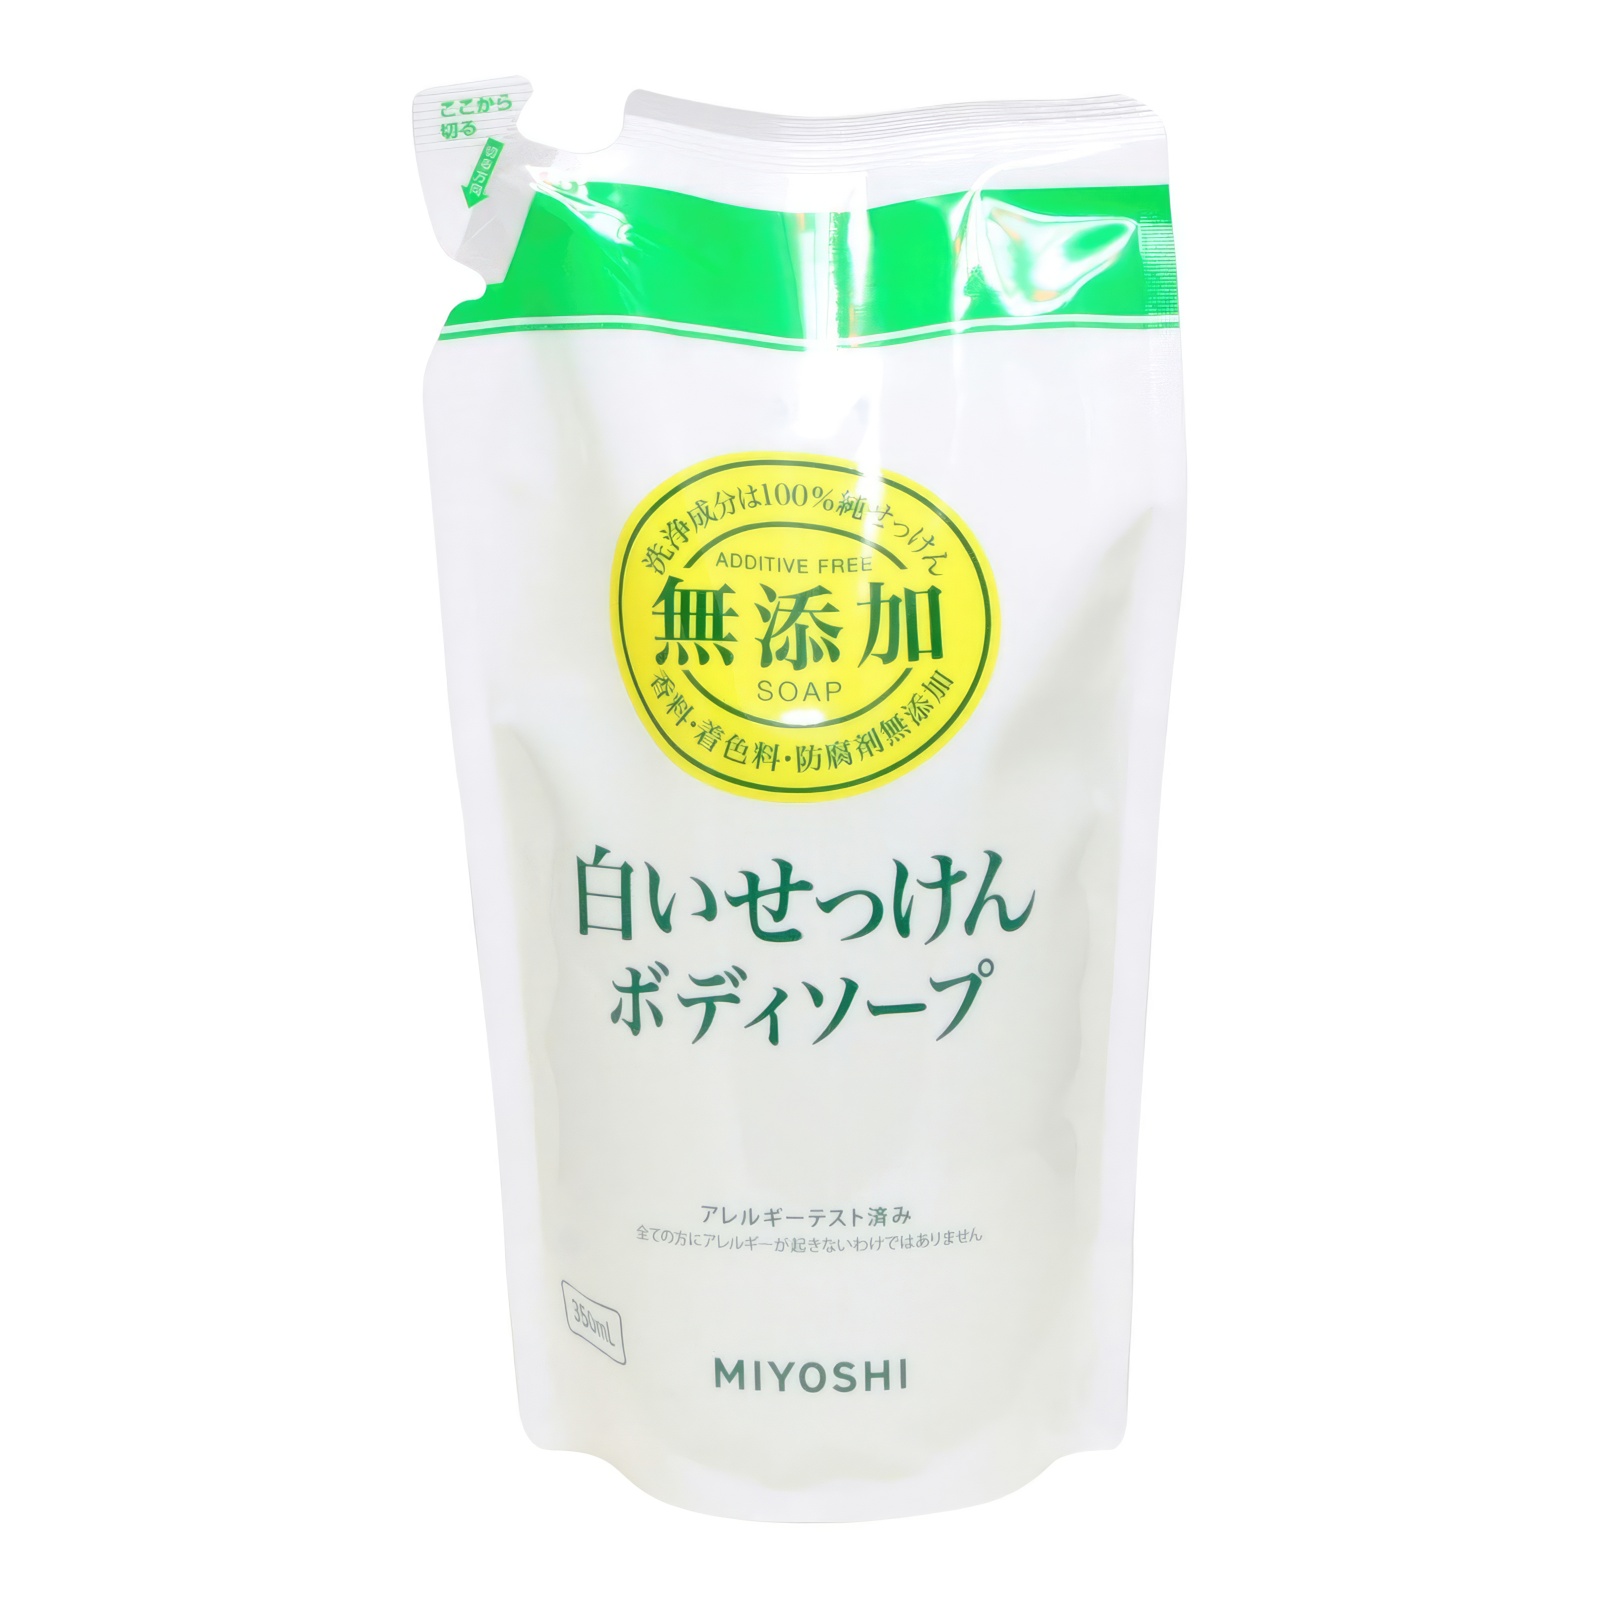 Натуральное жидкое мыло MIYOSHI эко для тела 350 мл з б synergetic жидкое мыло лемонграсс и мята антибактериальное с эффектом нейтрализации запаха 1000 0